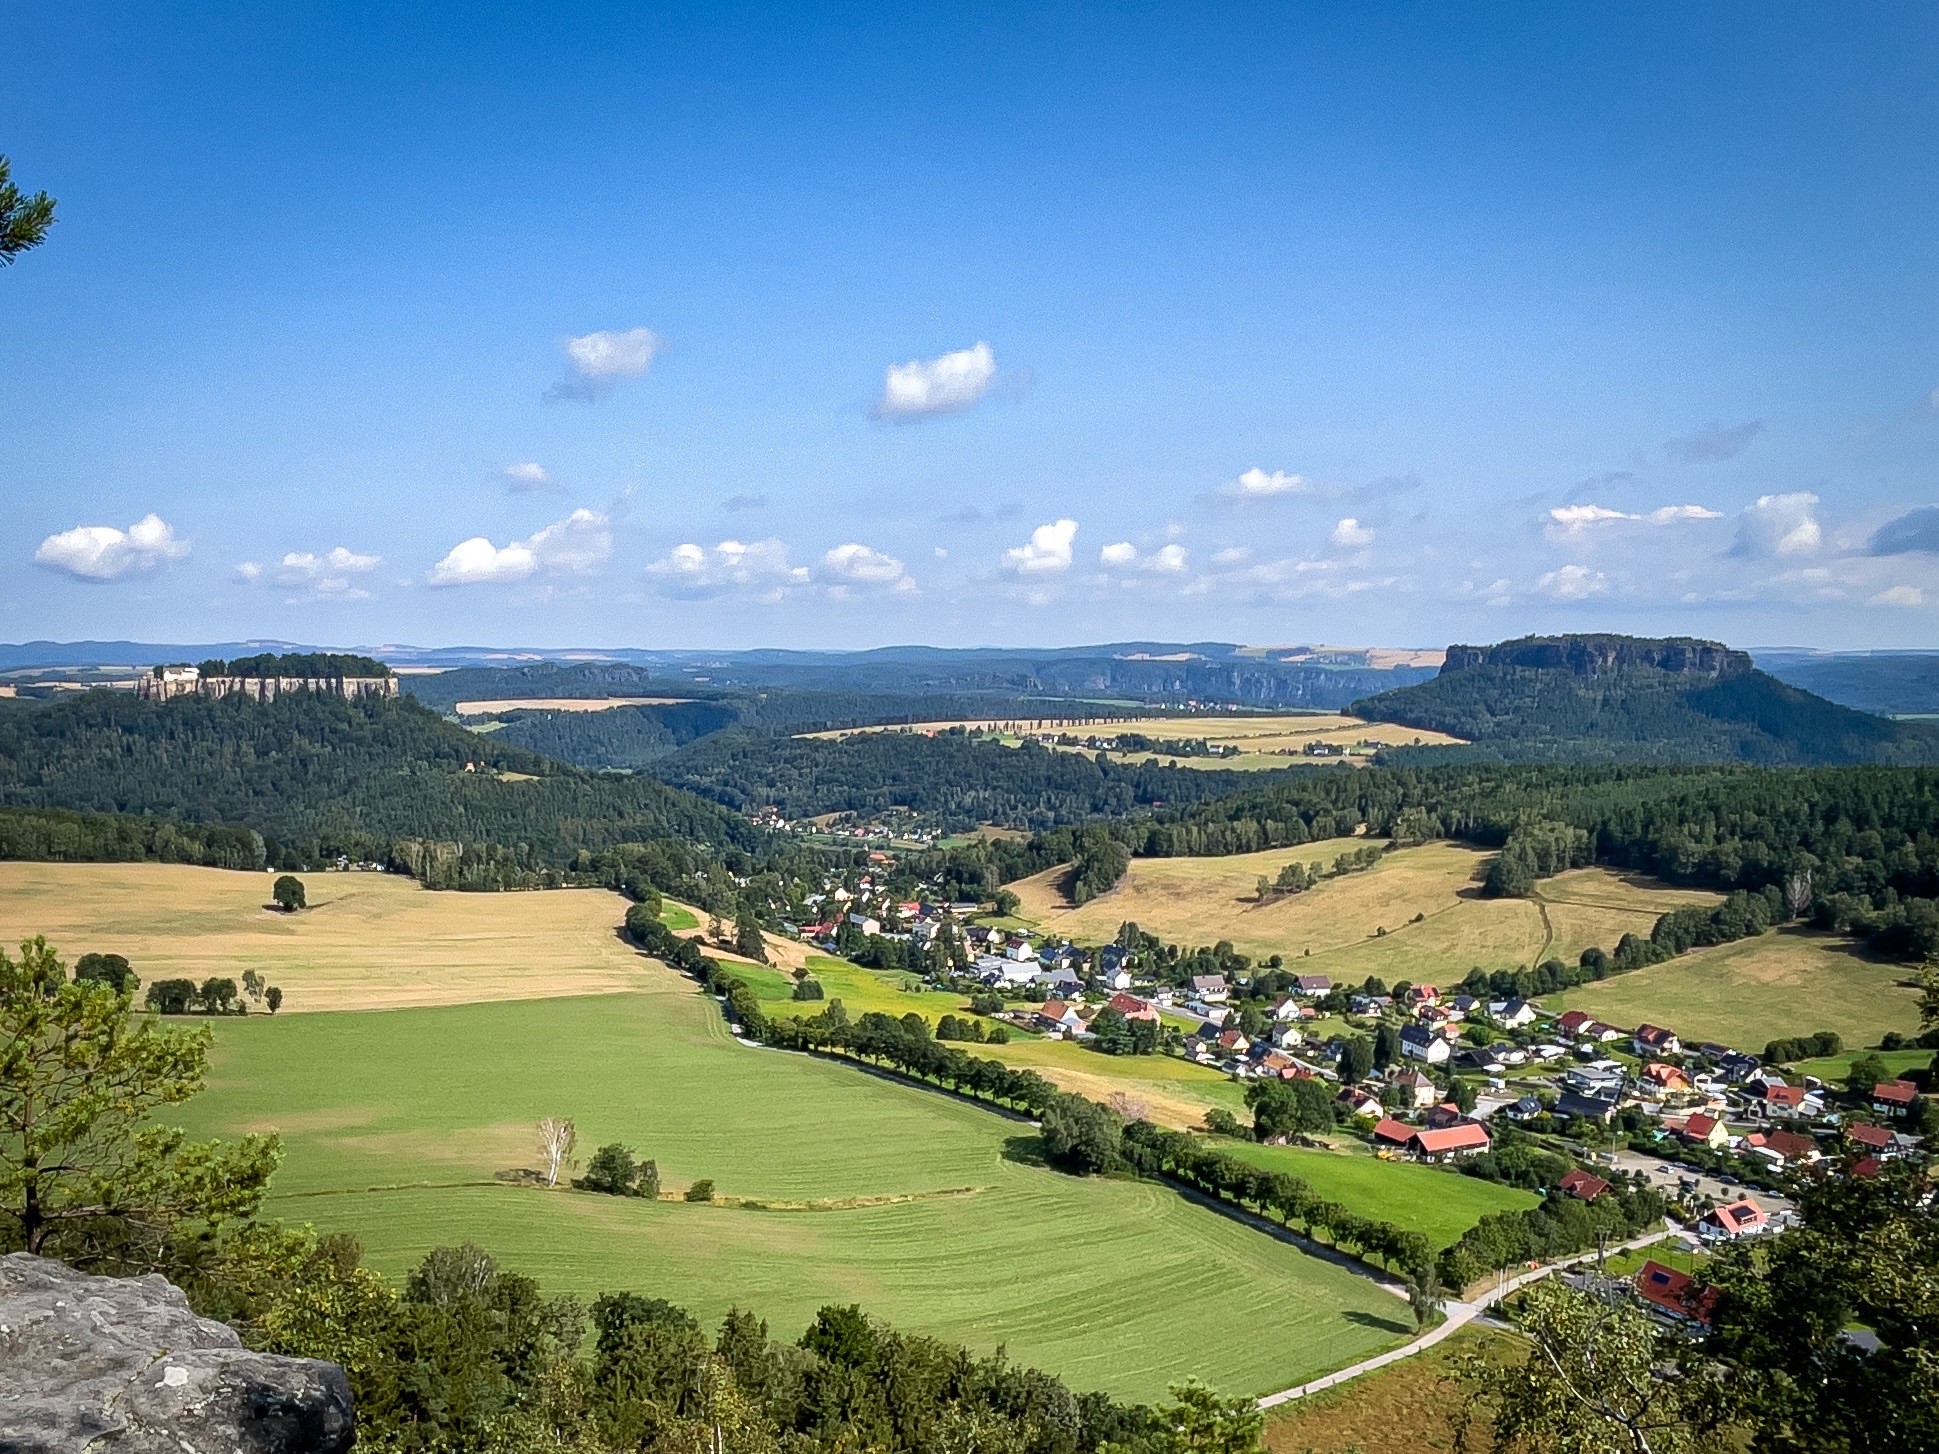 Malerische Landschaft mit sanften Hügeln, einem kleinen Dorf, offenen Feldern und dichten Wäldern, unter einem klaren blauen Himmel mit verstreuten Wolken.
Links hinten die Festung Königstein, rechts hinten der Lilienstein 